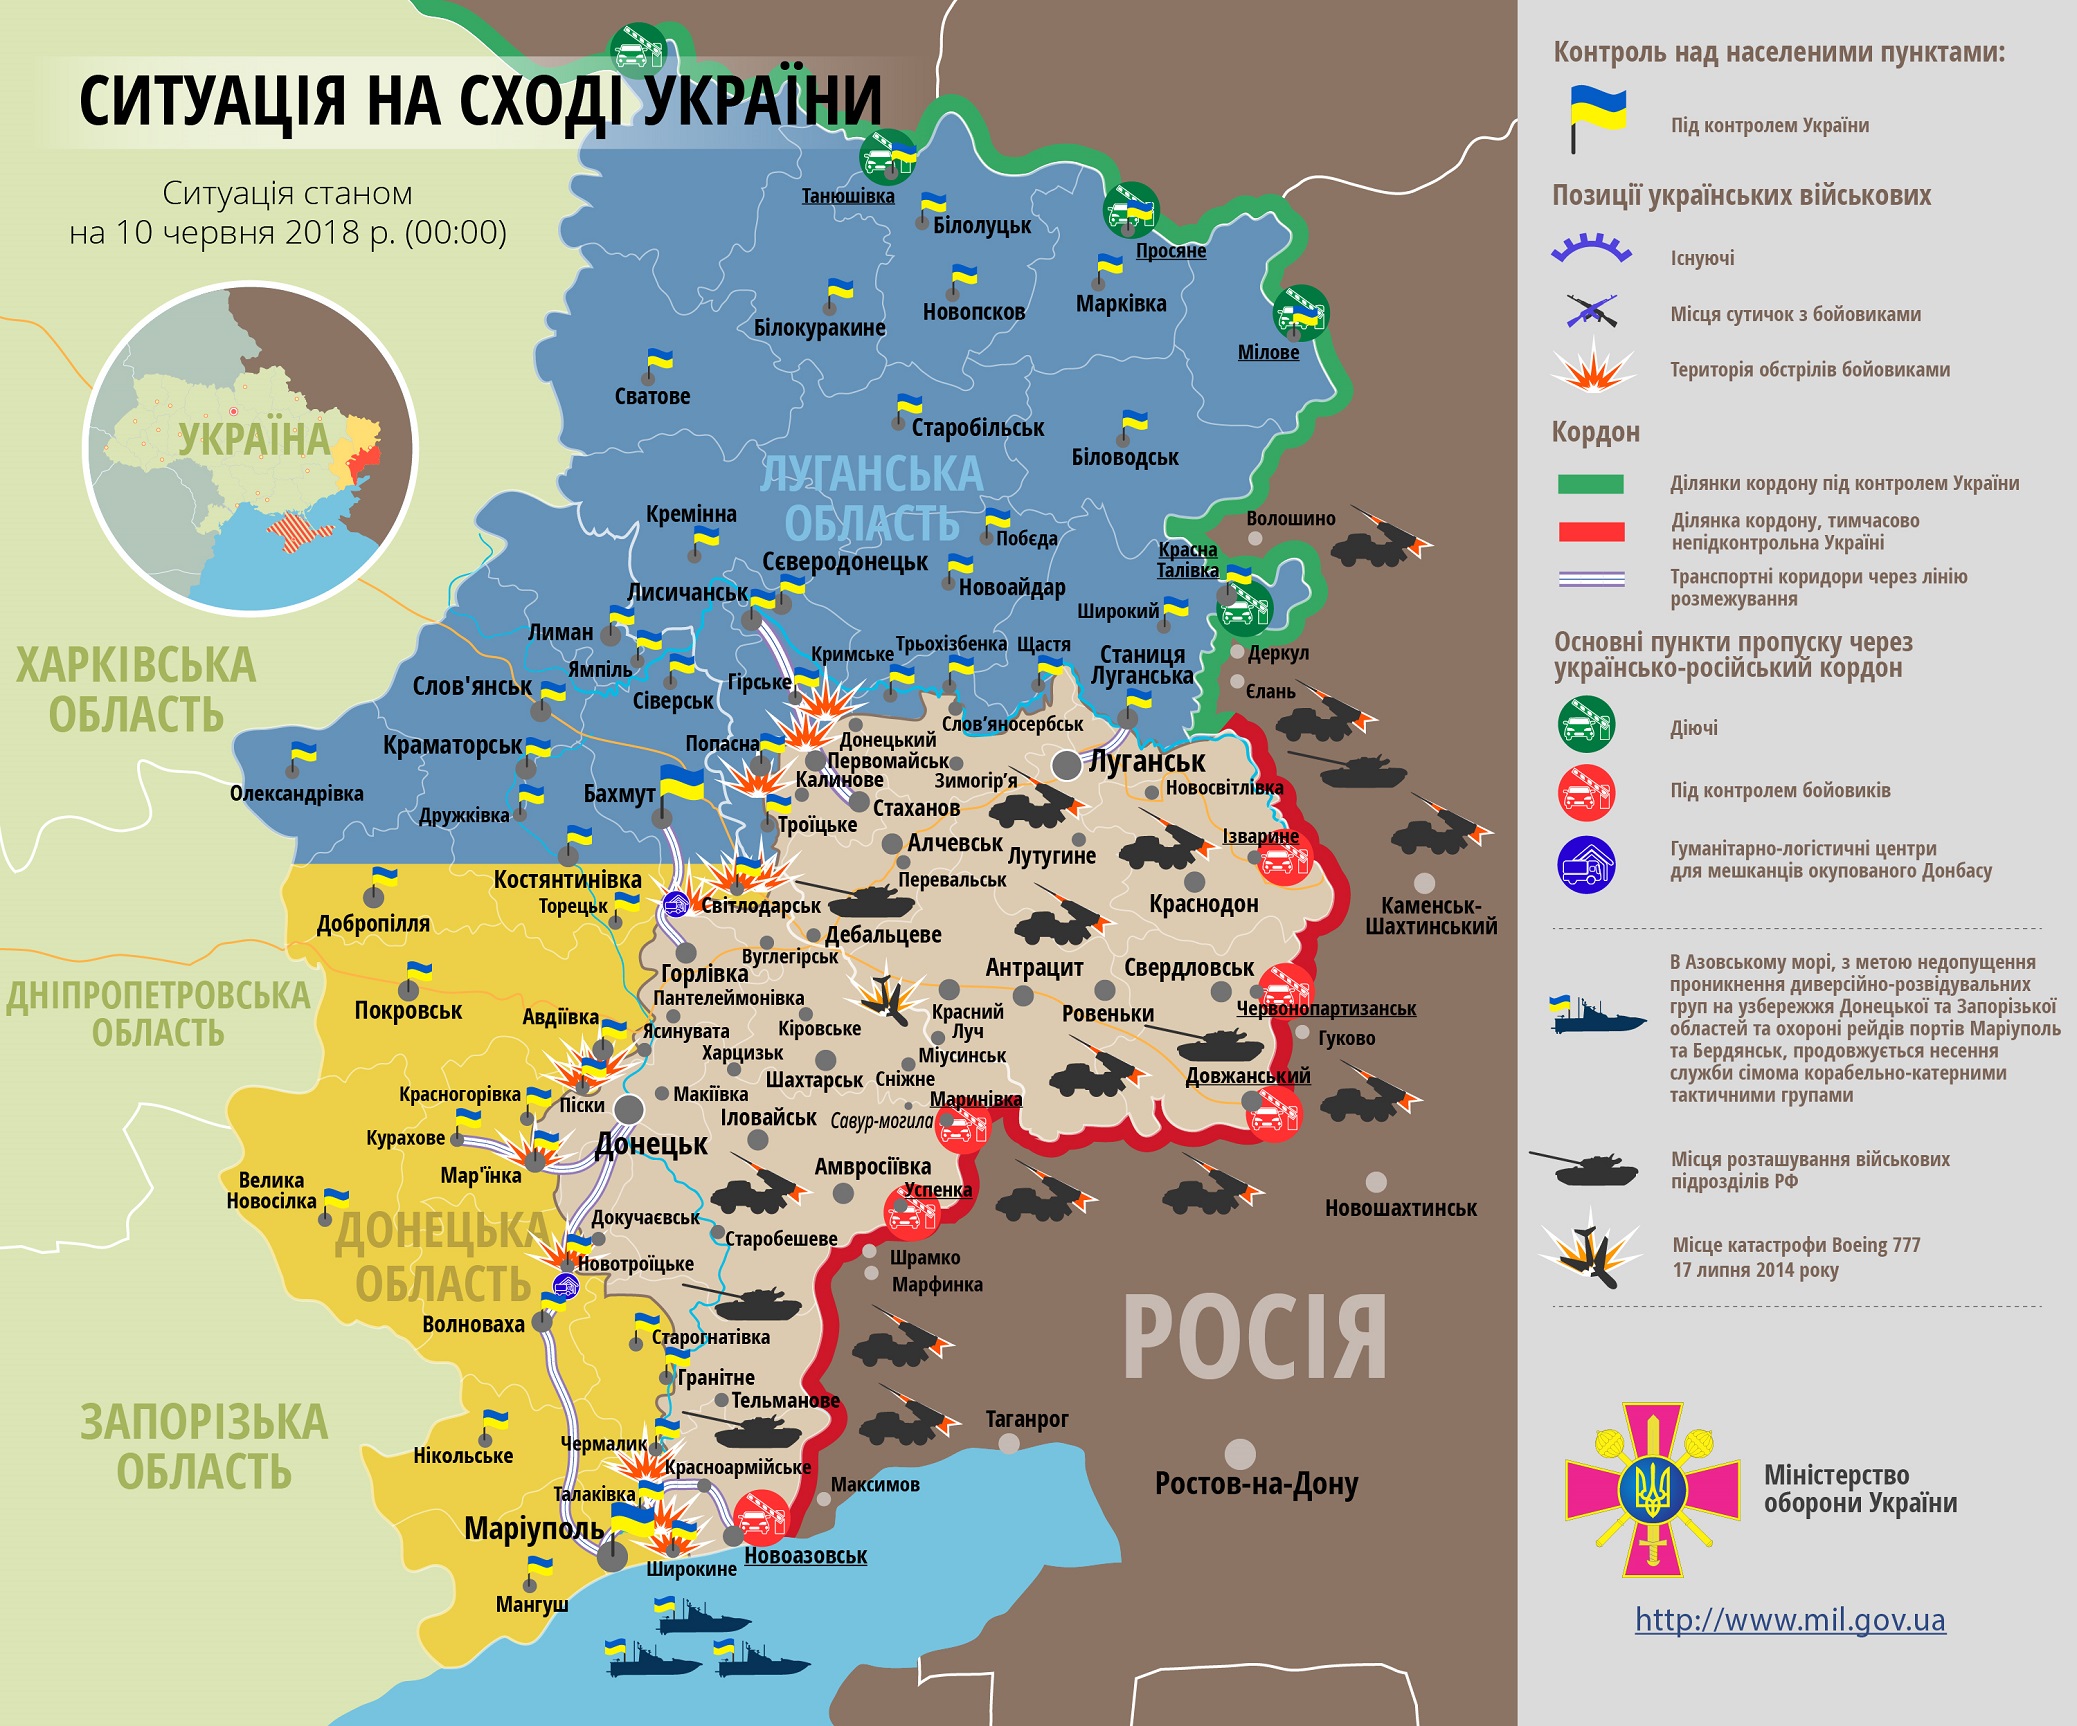 "ДНР" накрыла позиции ВСУ минометным огнем: боевая сводка и карта ООС с расположением сил за 10 июня 